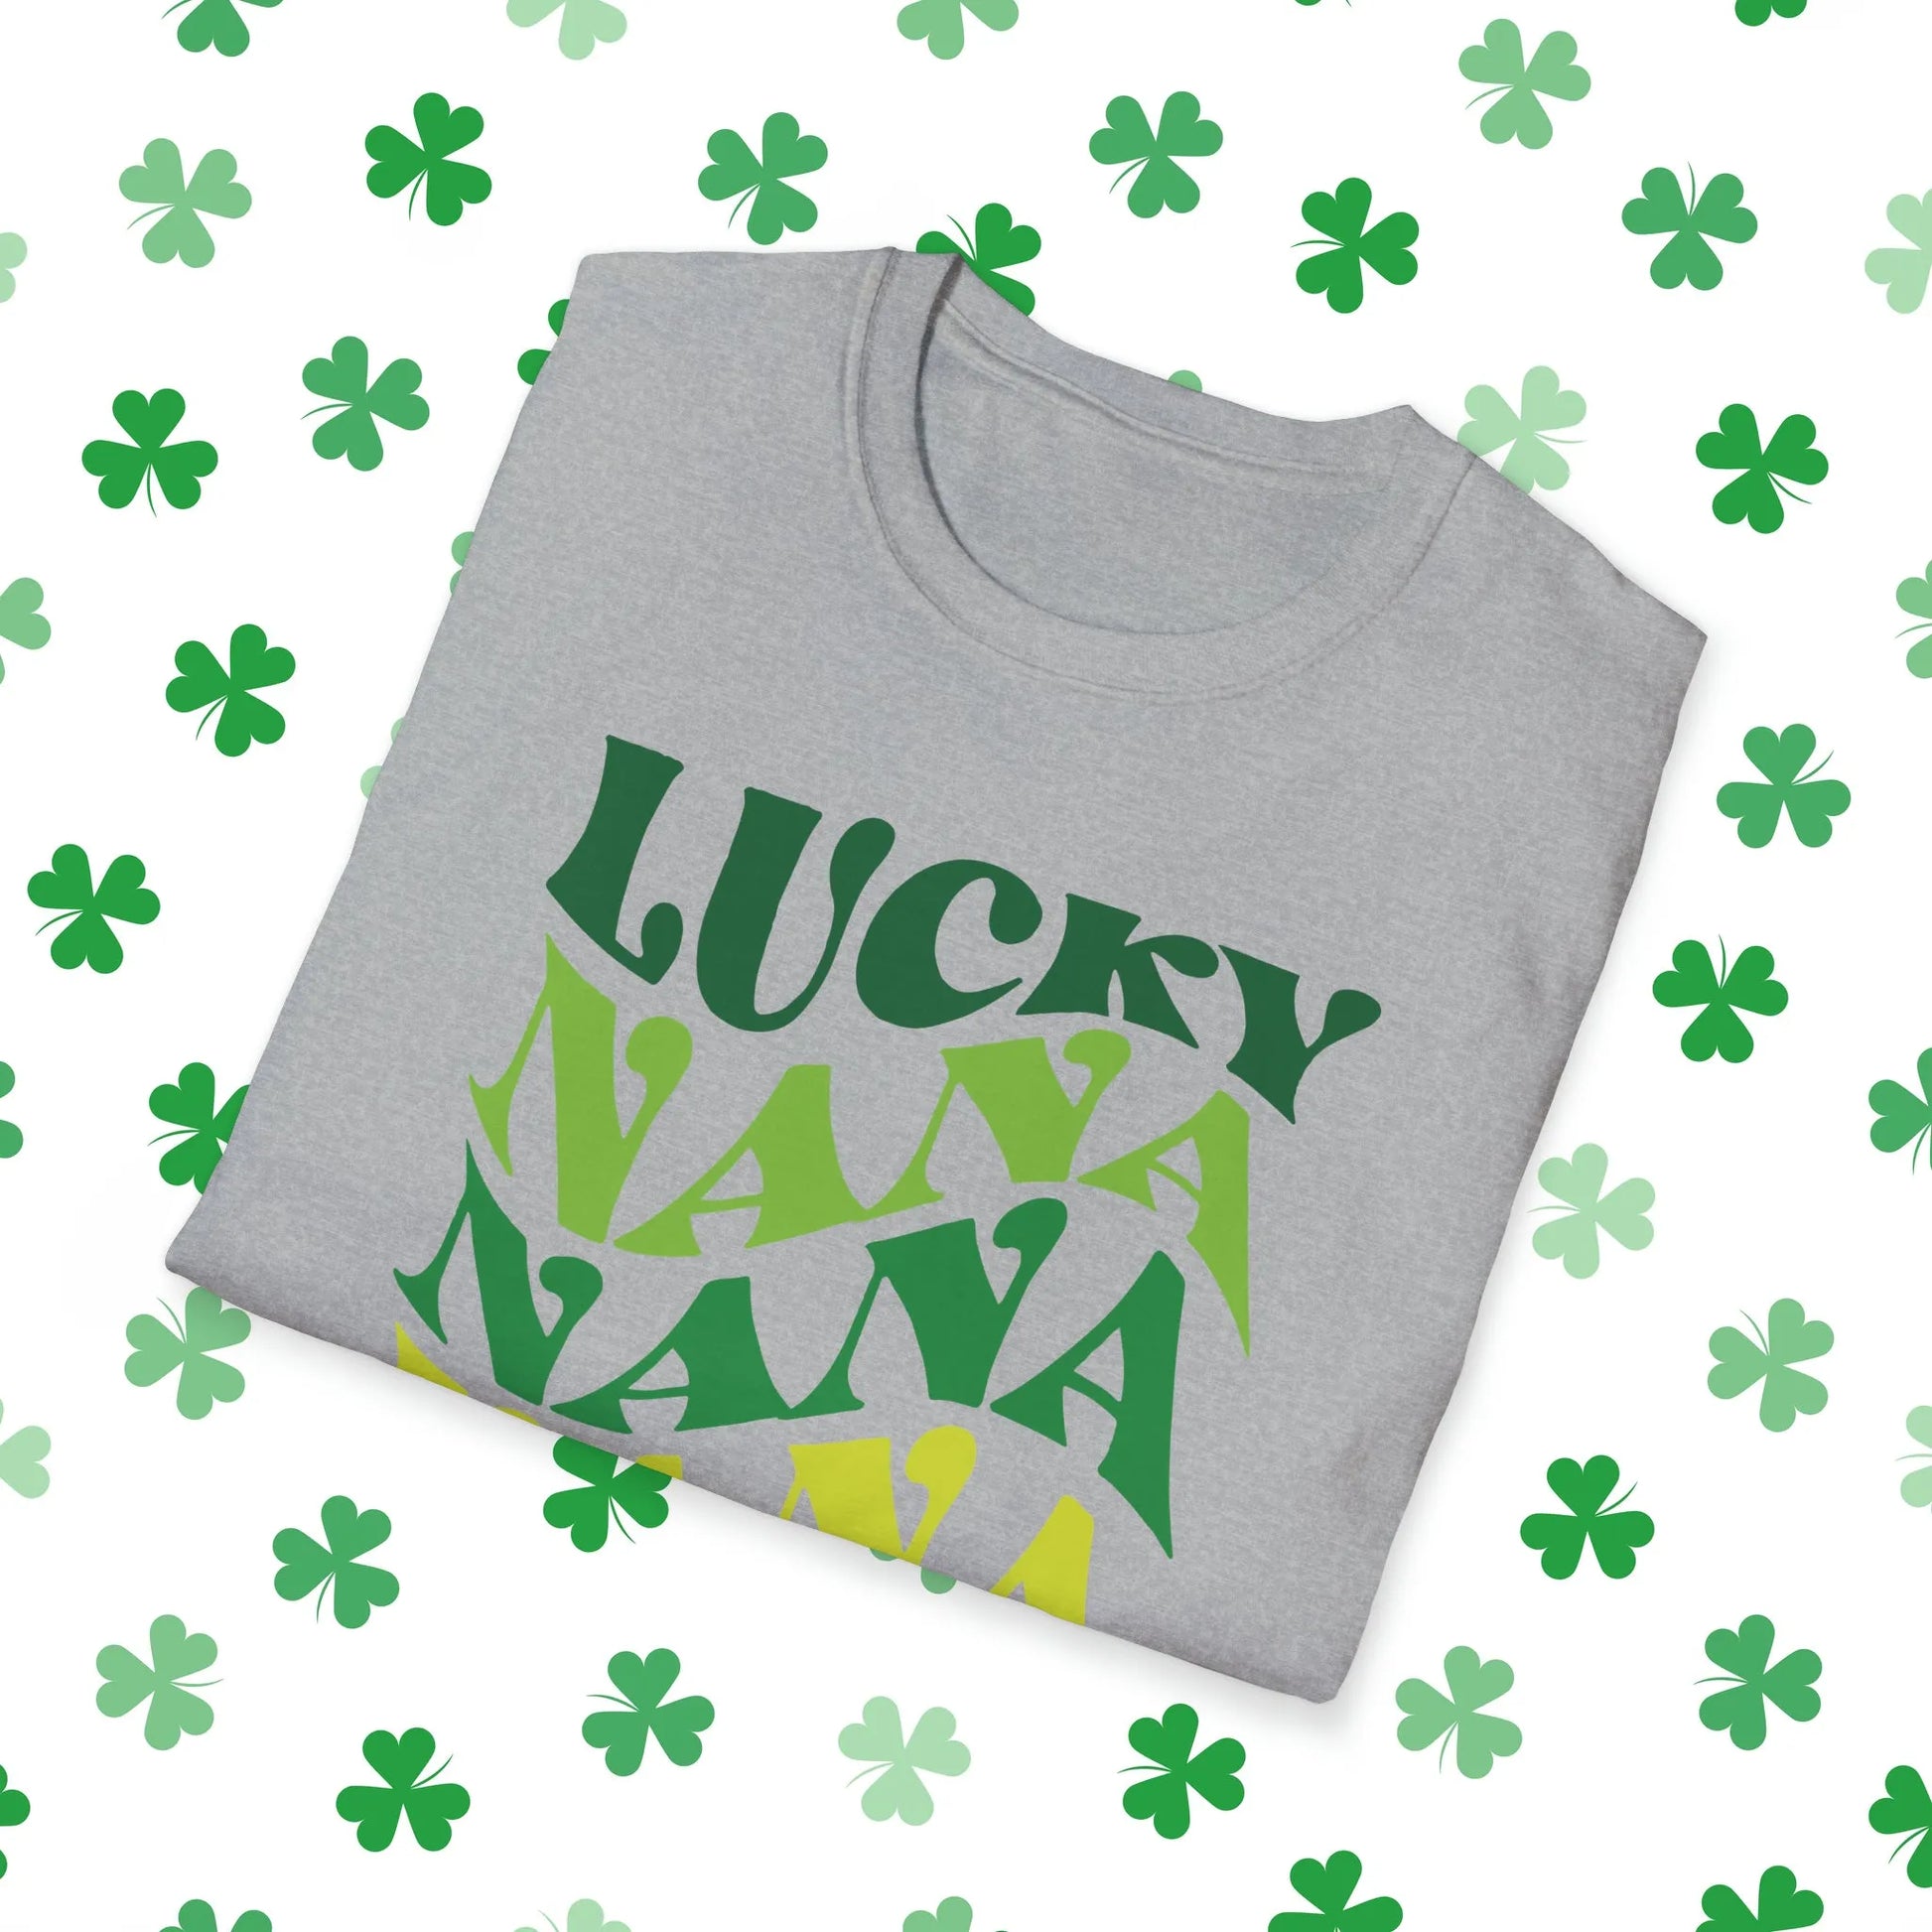 Lucky Nana Nana Nana Retro-Style St. Patrick's Day T-Shirt - Comfort & Charm - St. Patrick's Day Nana Shirt Grey Folded